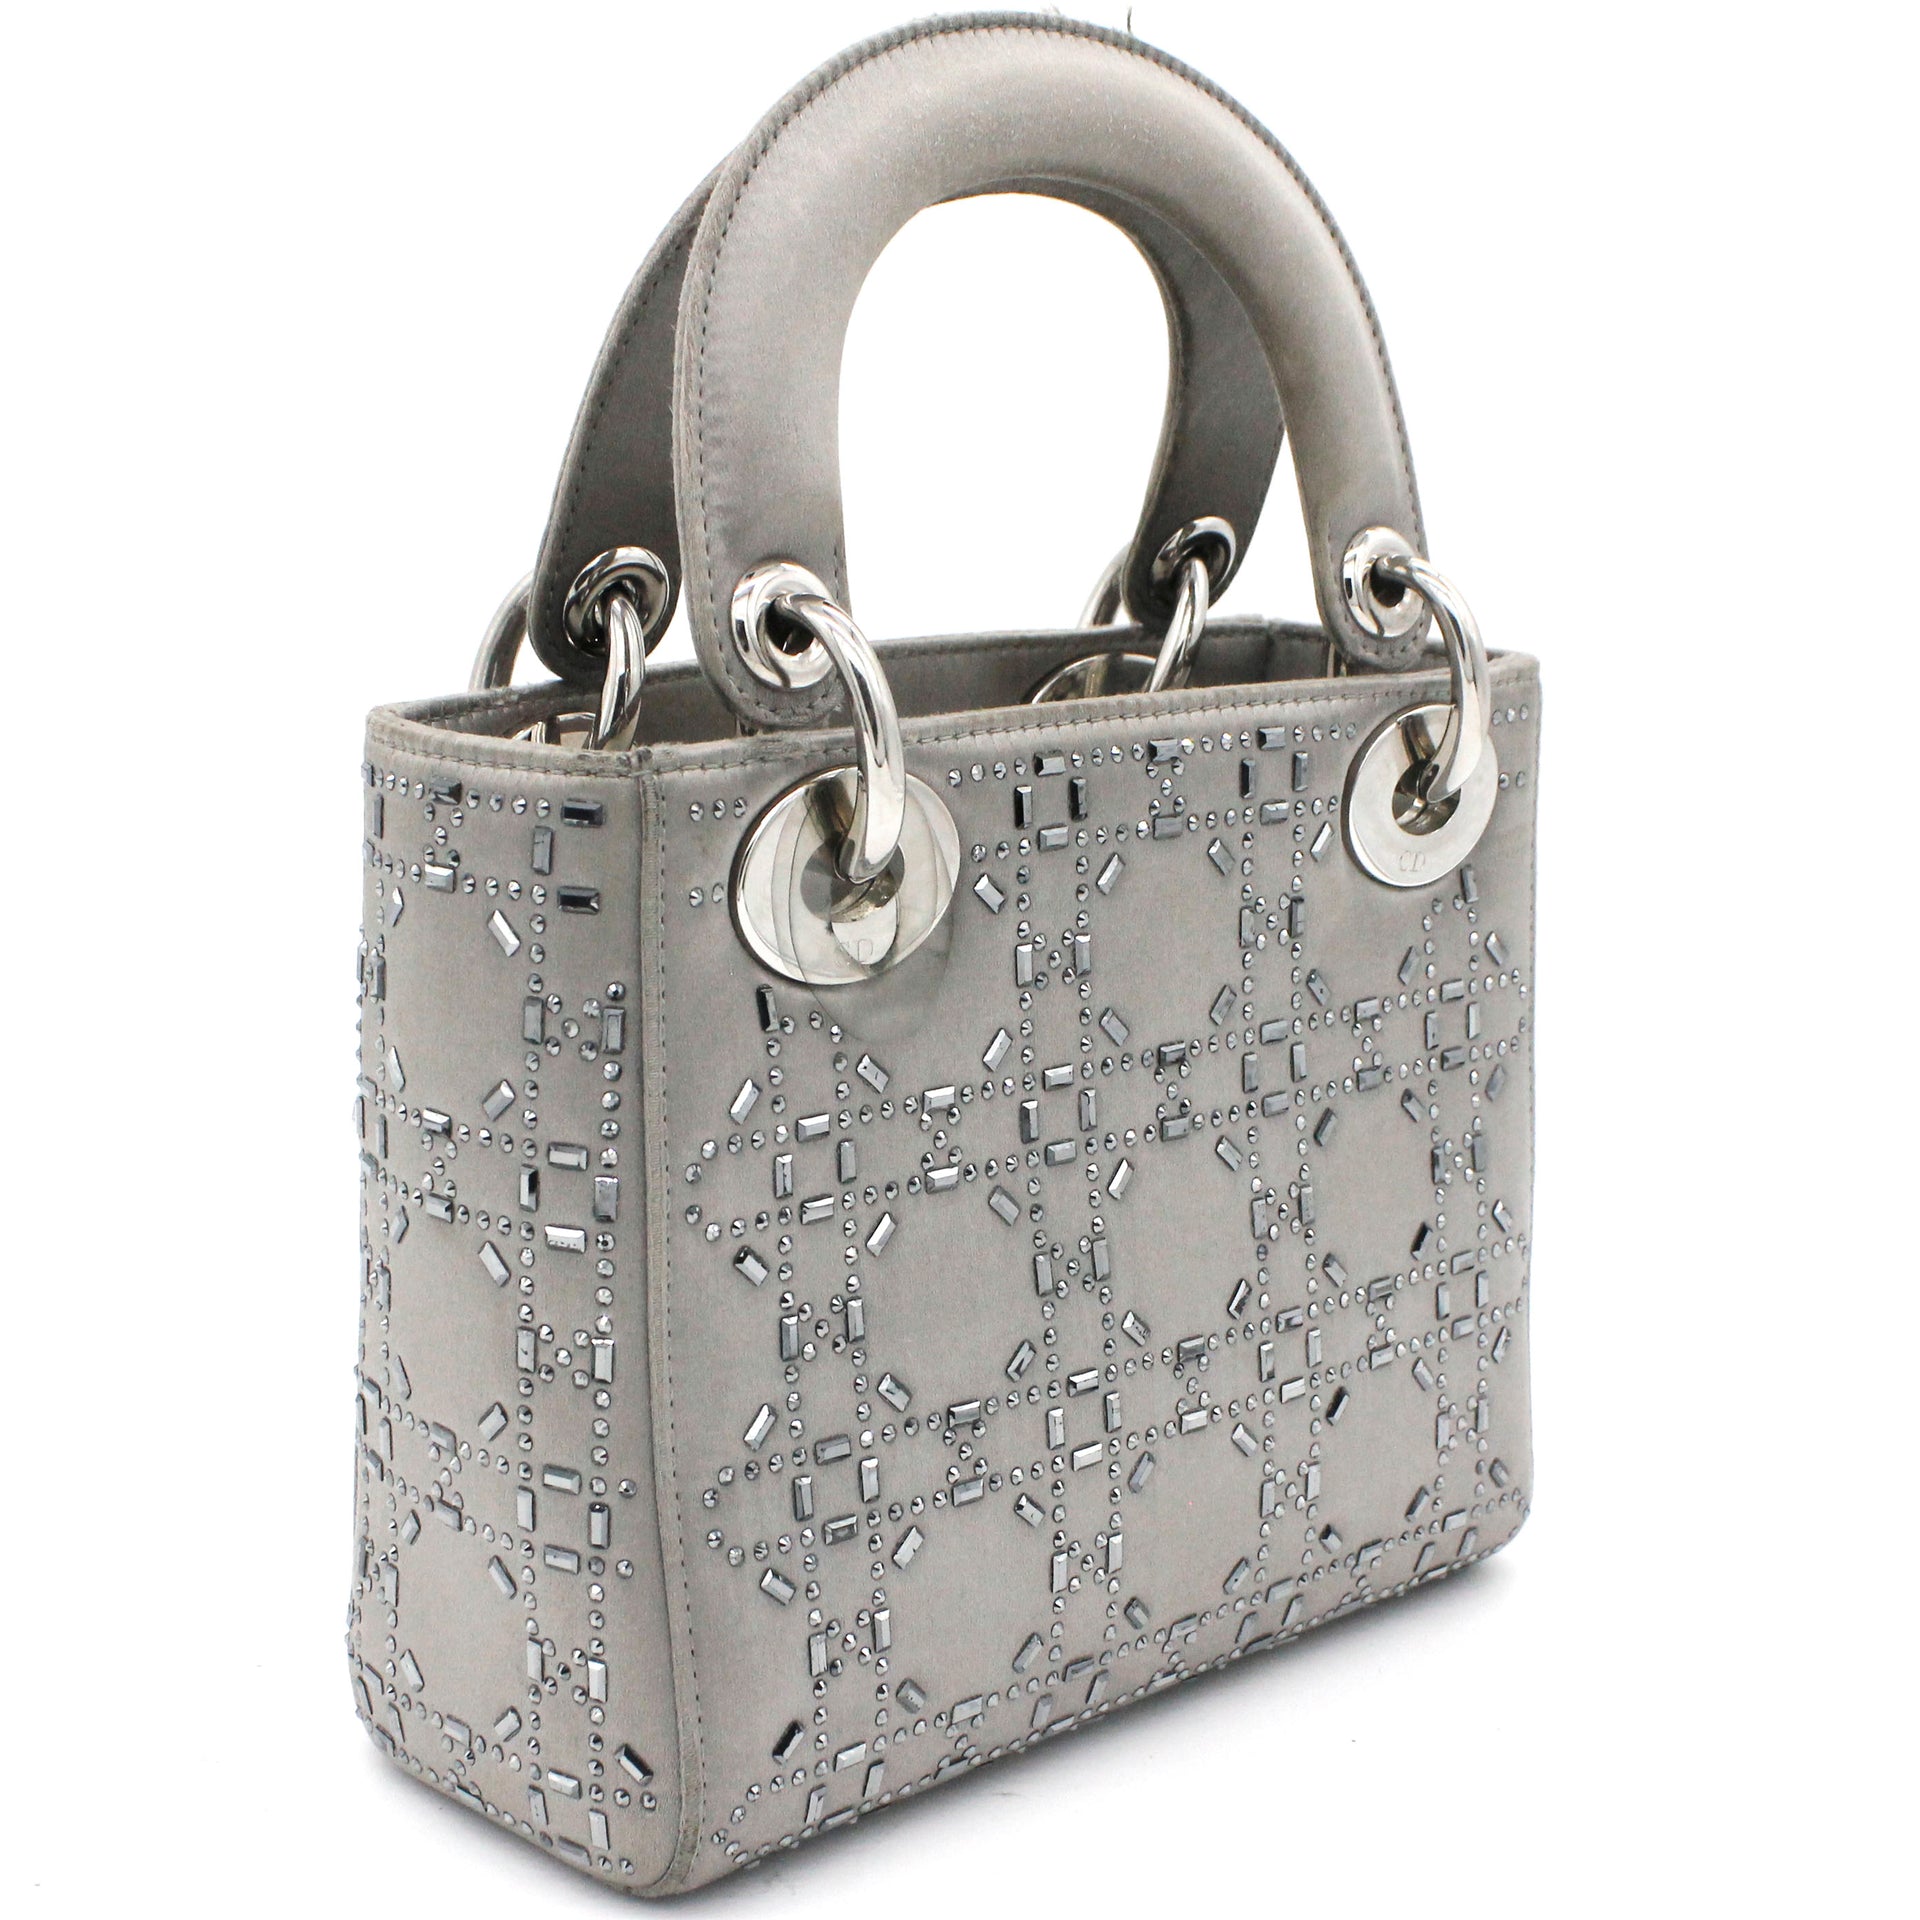 Mickey Mouse Swarovski keychain  Lady dior bag, Dior bag, Lady dior